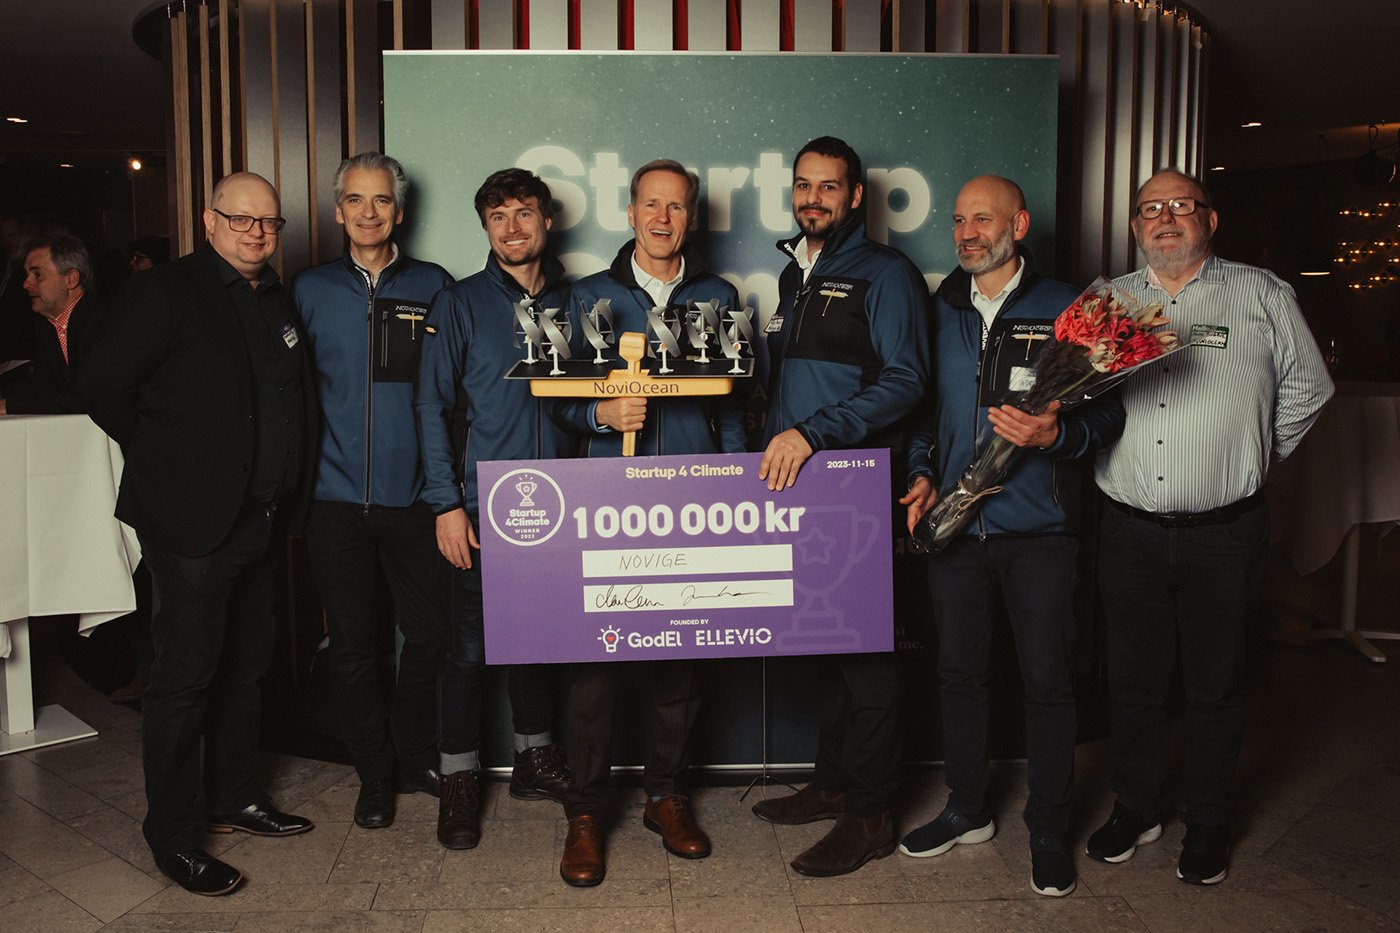 Hela företaget med segerchecken efter prisutdelningen av Startup4Climate. Foto: Kajsa Göransson.